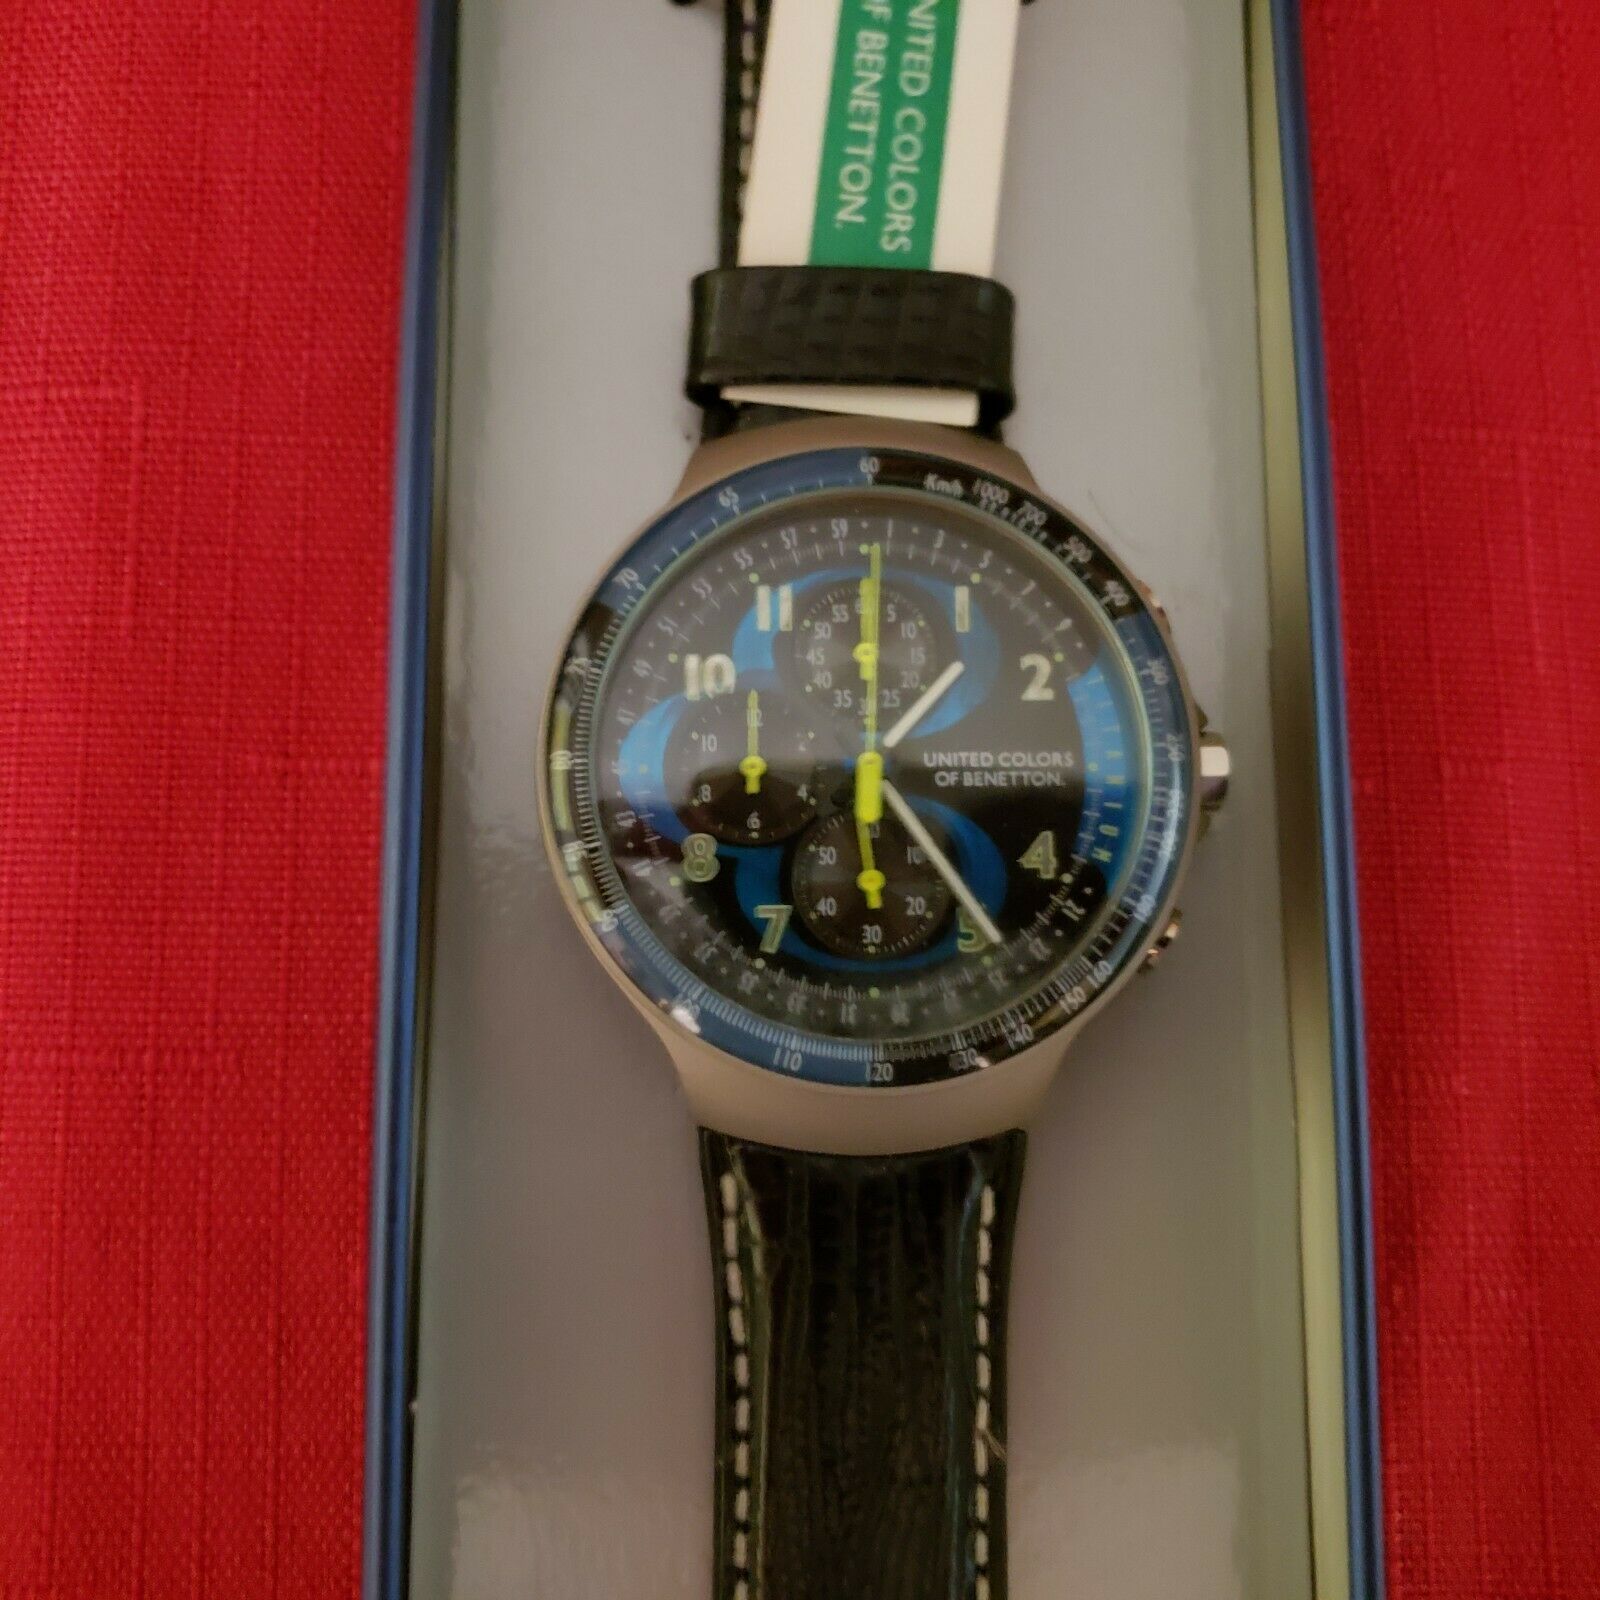 United colors of benetton titanium watch